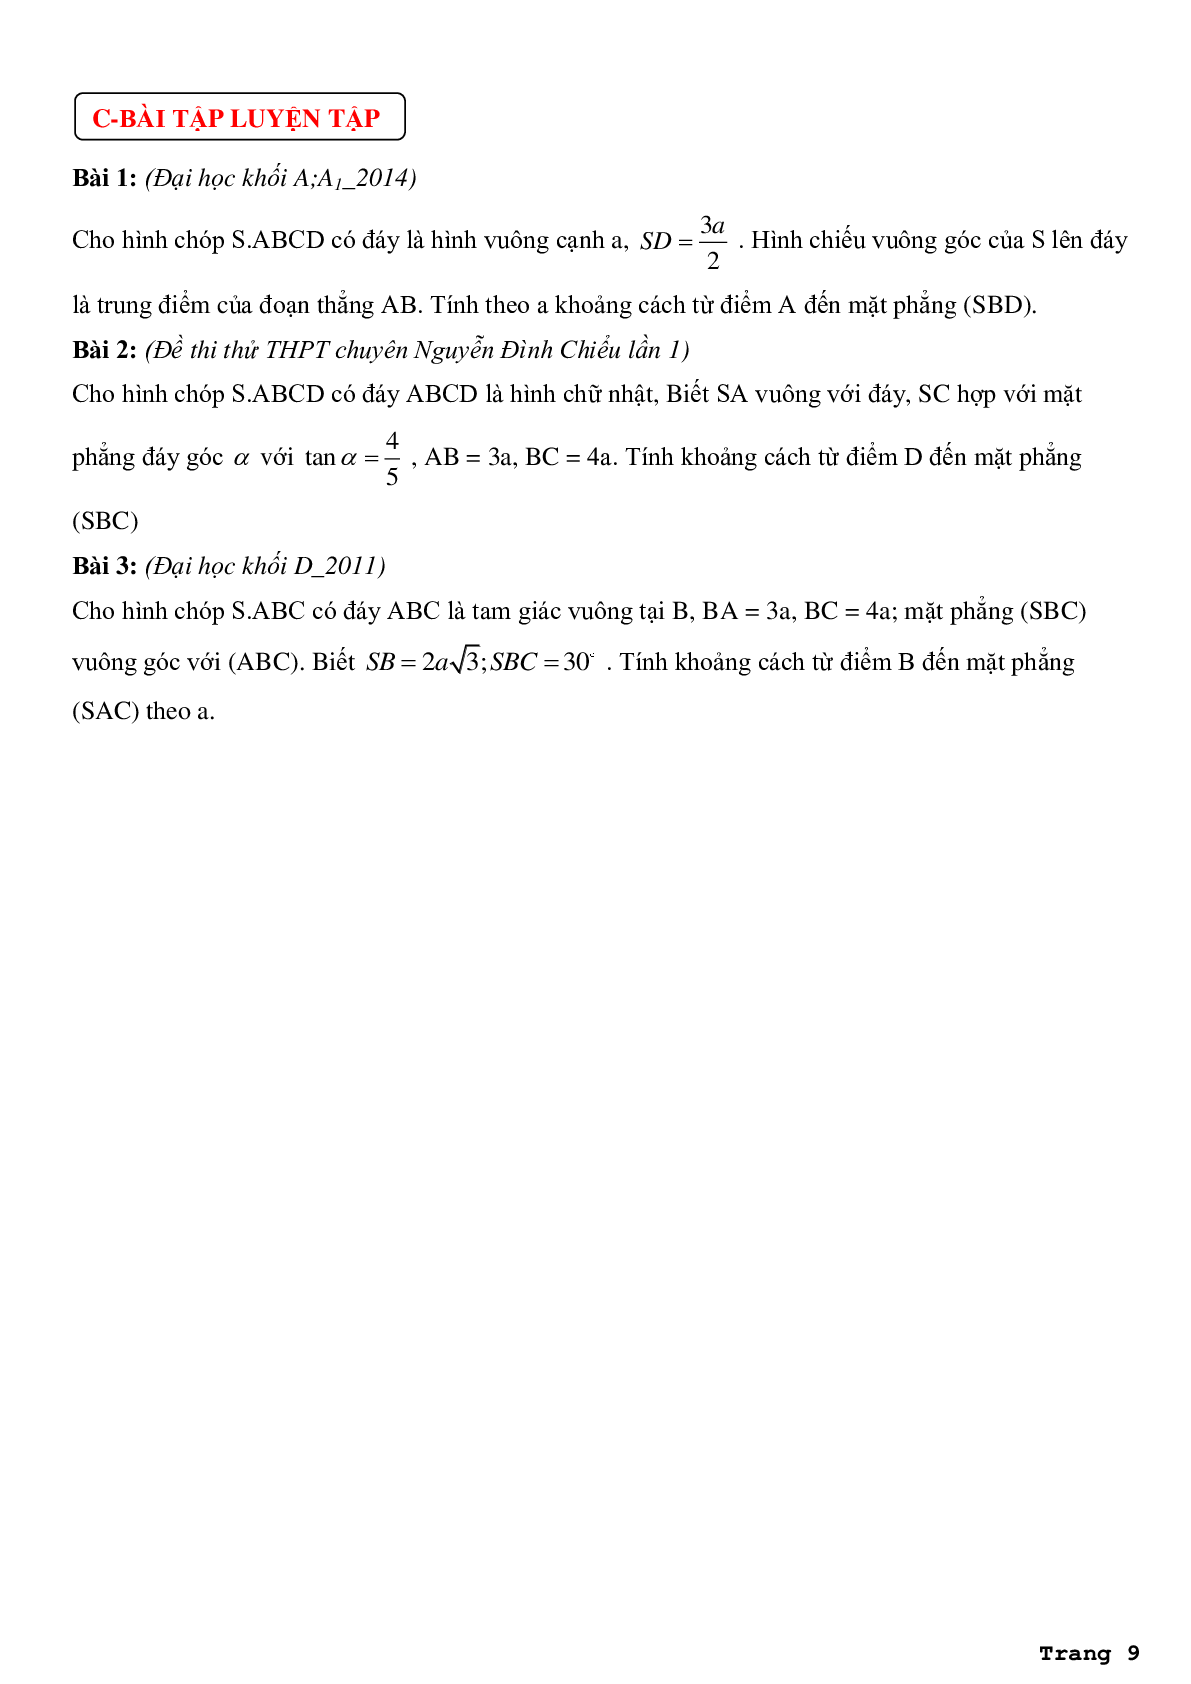 Phân dạng bài tập và phương pháp giải bài toán về khoảng cách từ điểm đến mặt phẳng (trang 9)